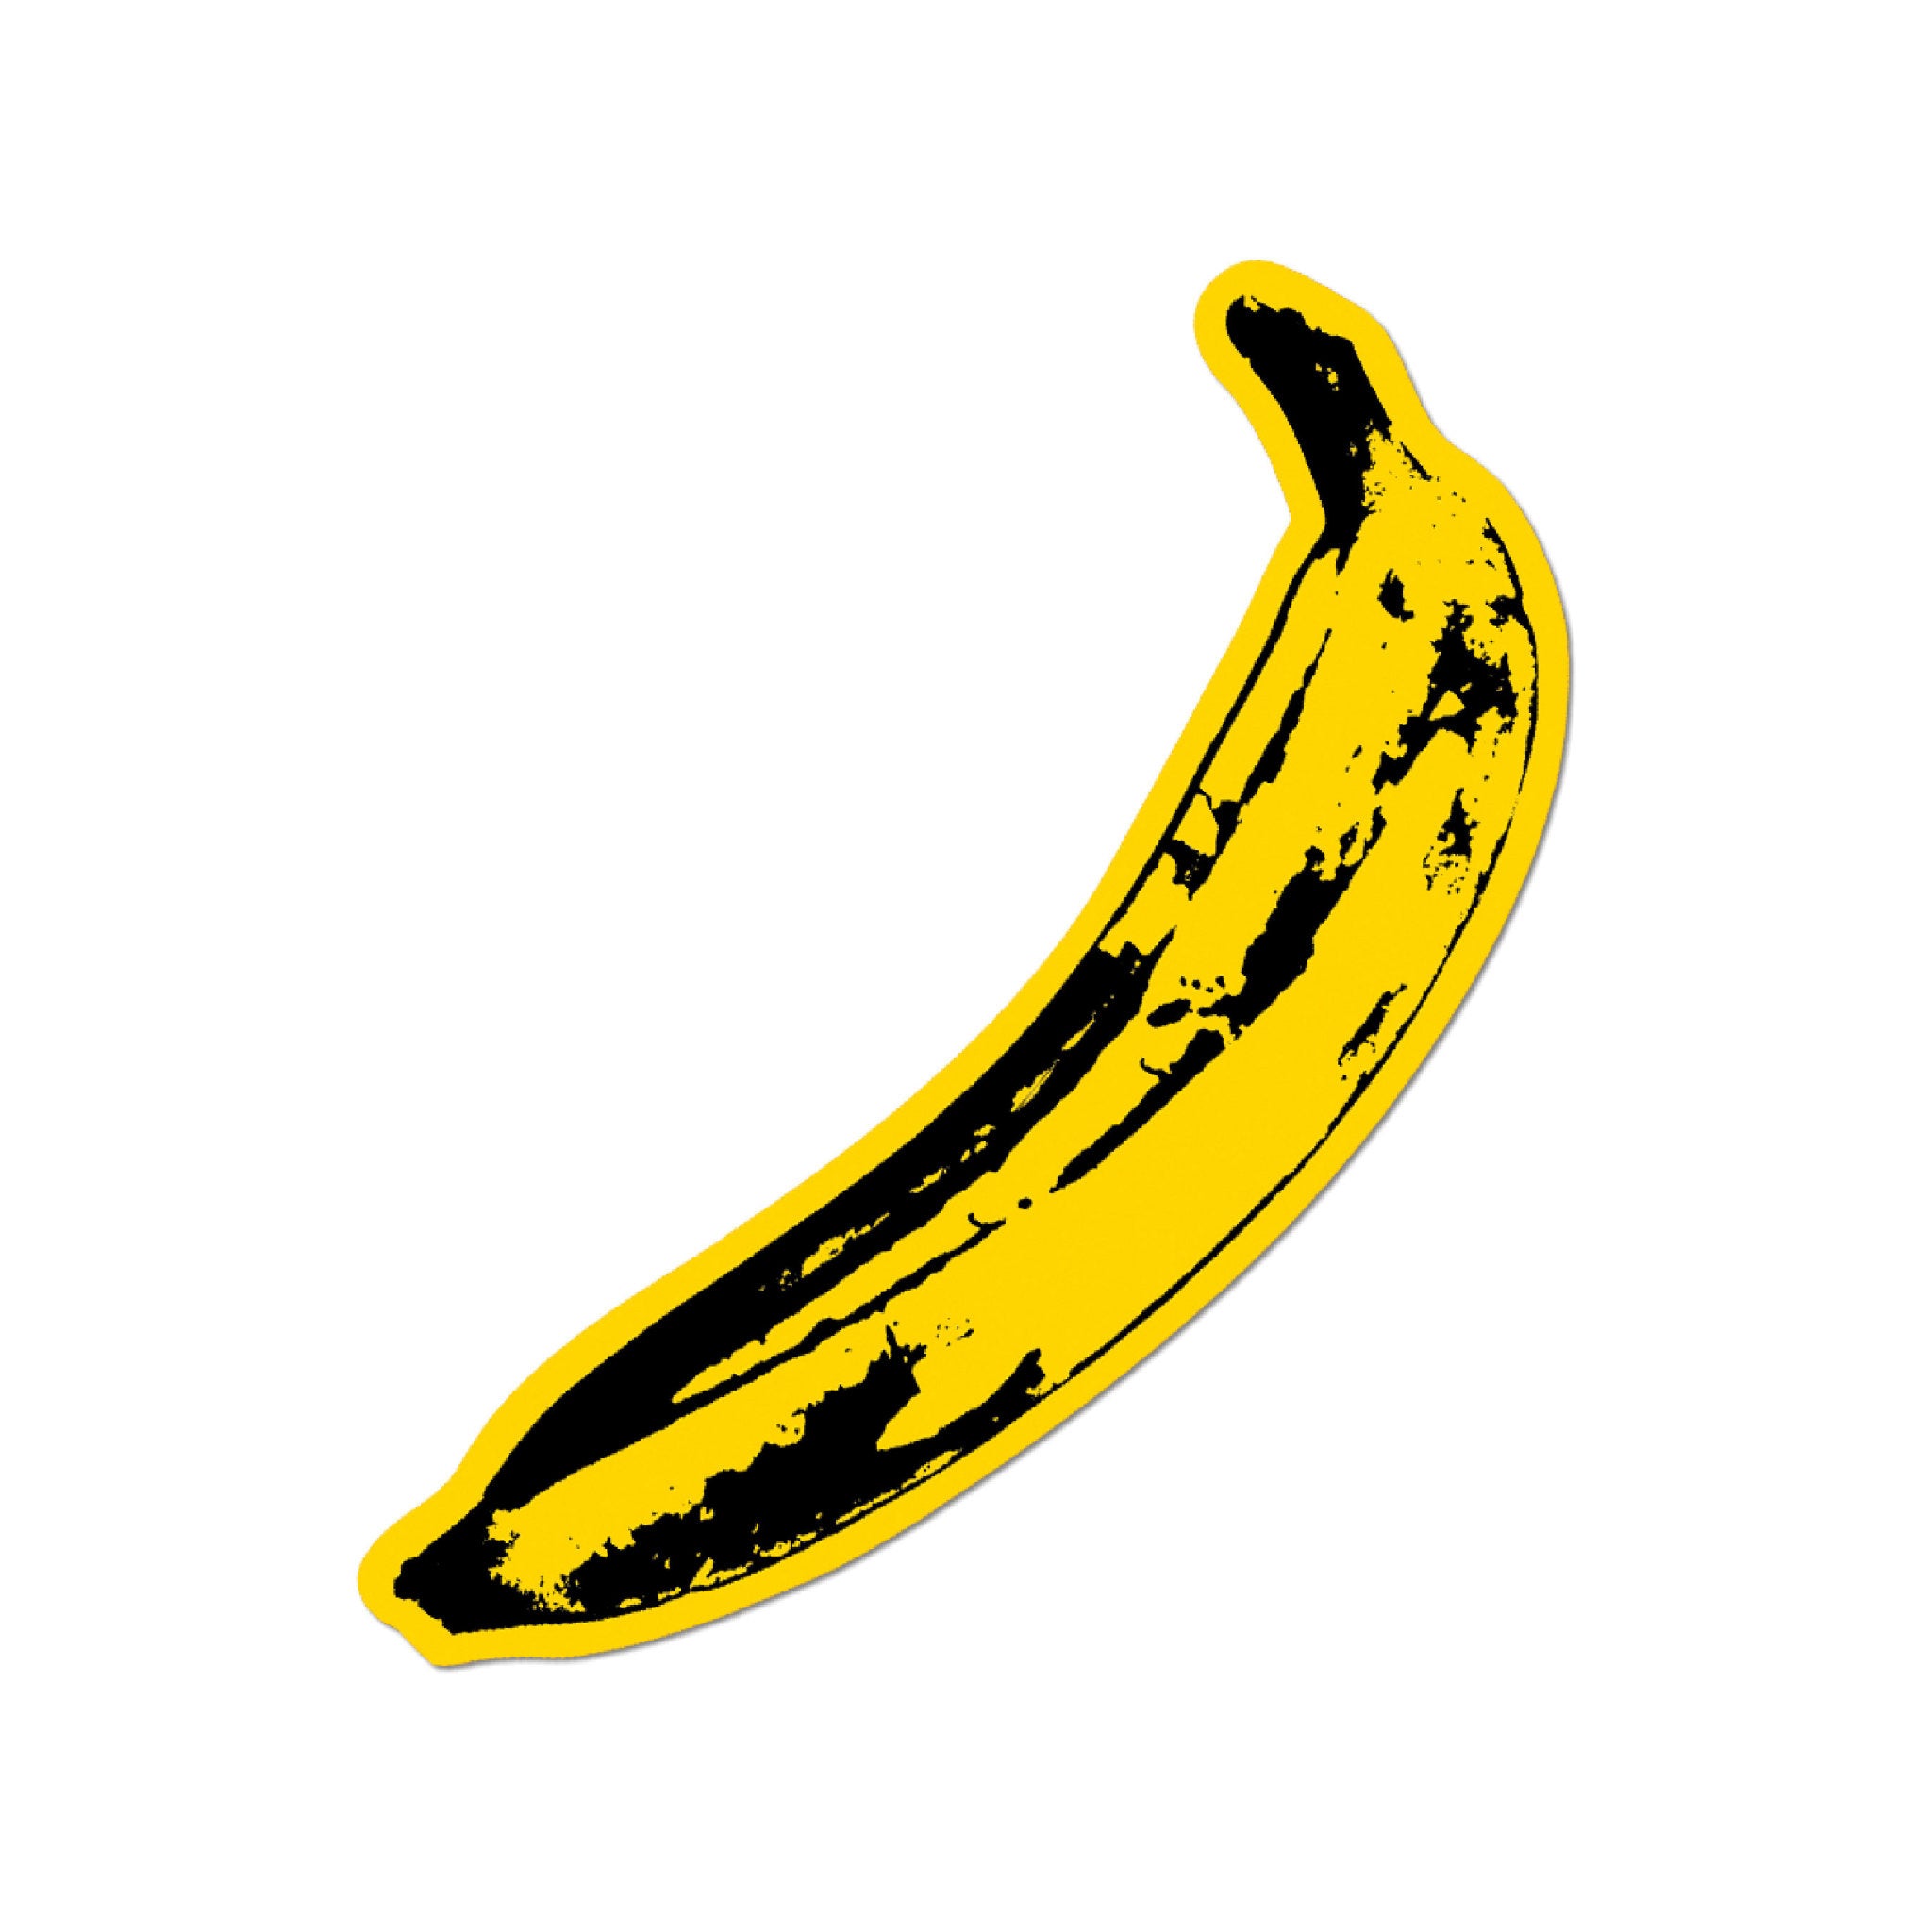 Andy Warhol Big Banana Single Sticker - Wynwood Walls Shop